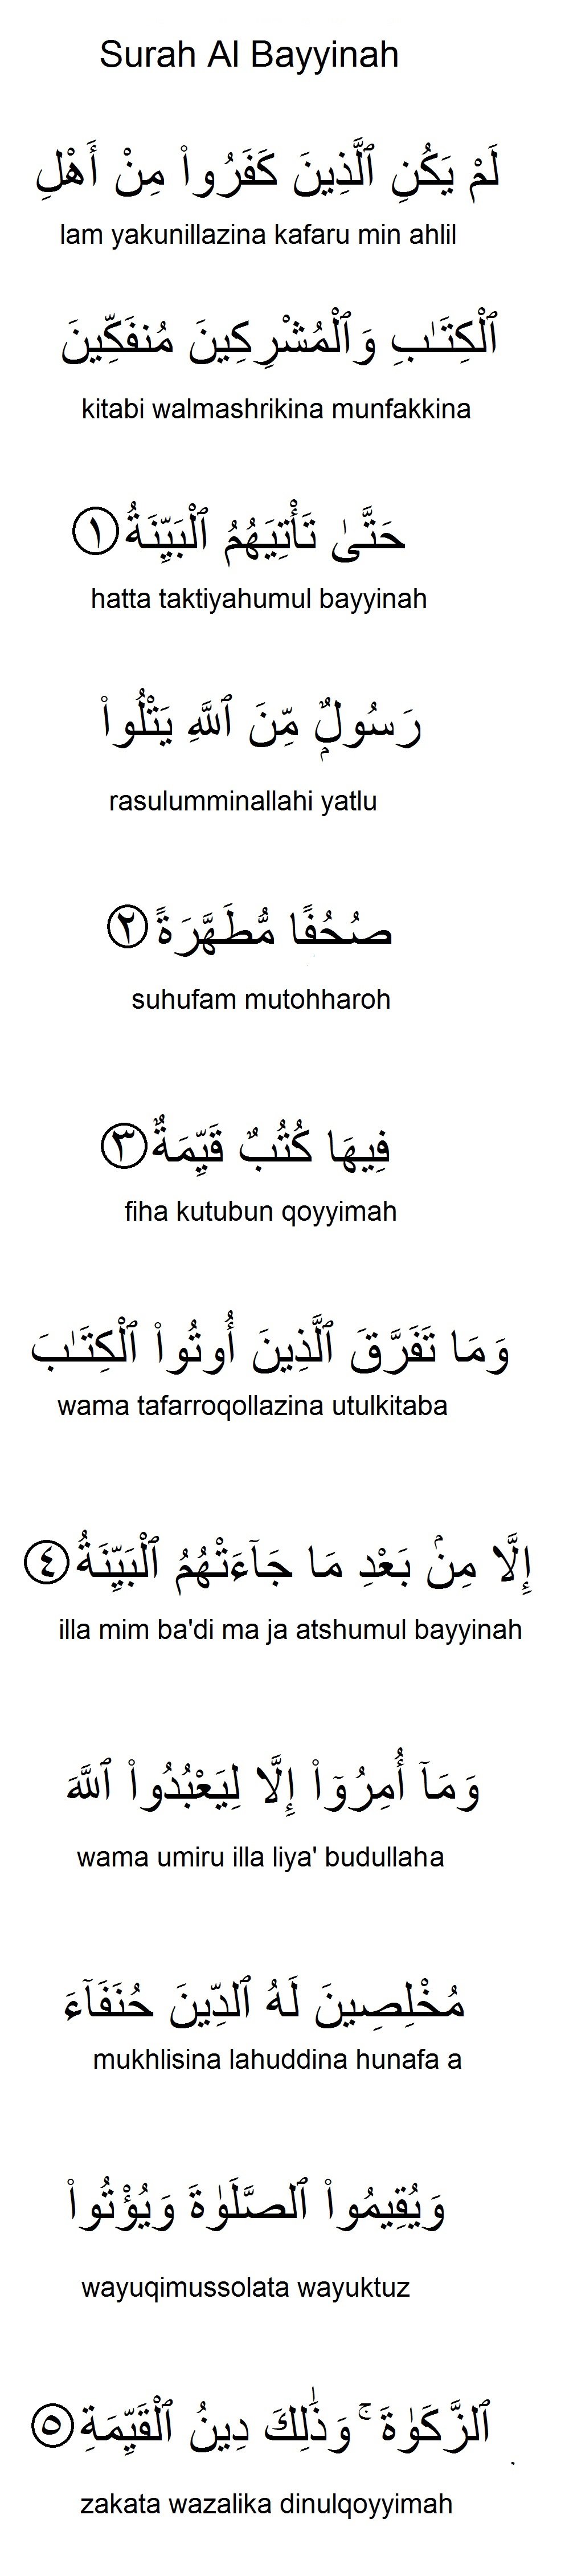 Surah Al Bayyinah Panduan Rumi Terjemahan Aku Muslim